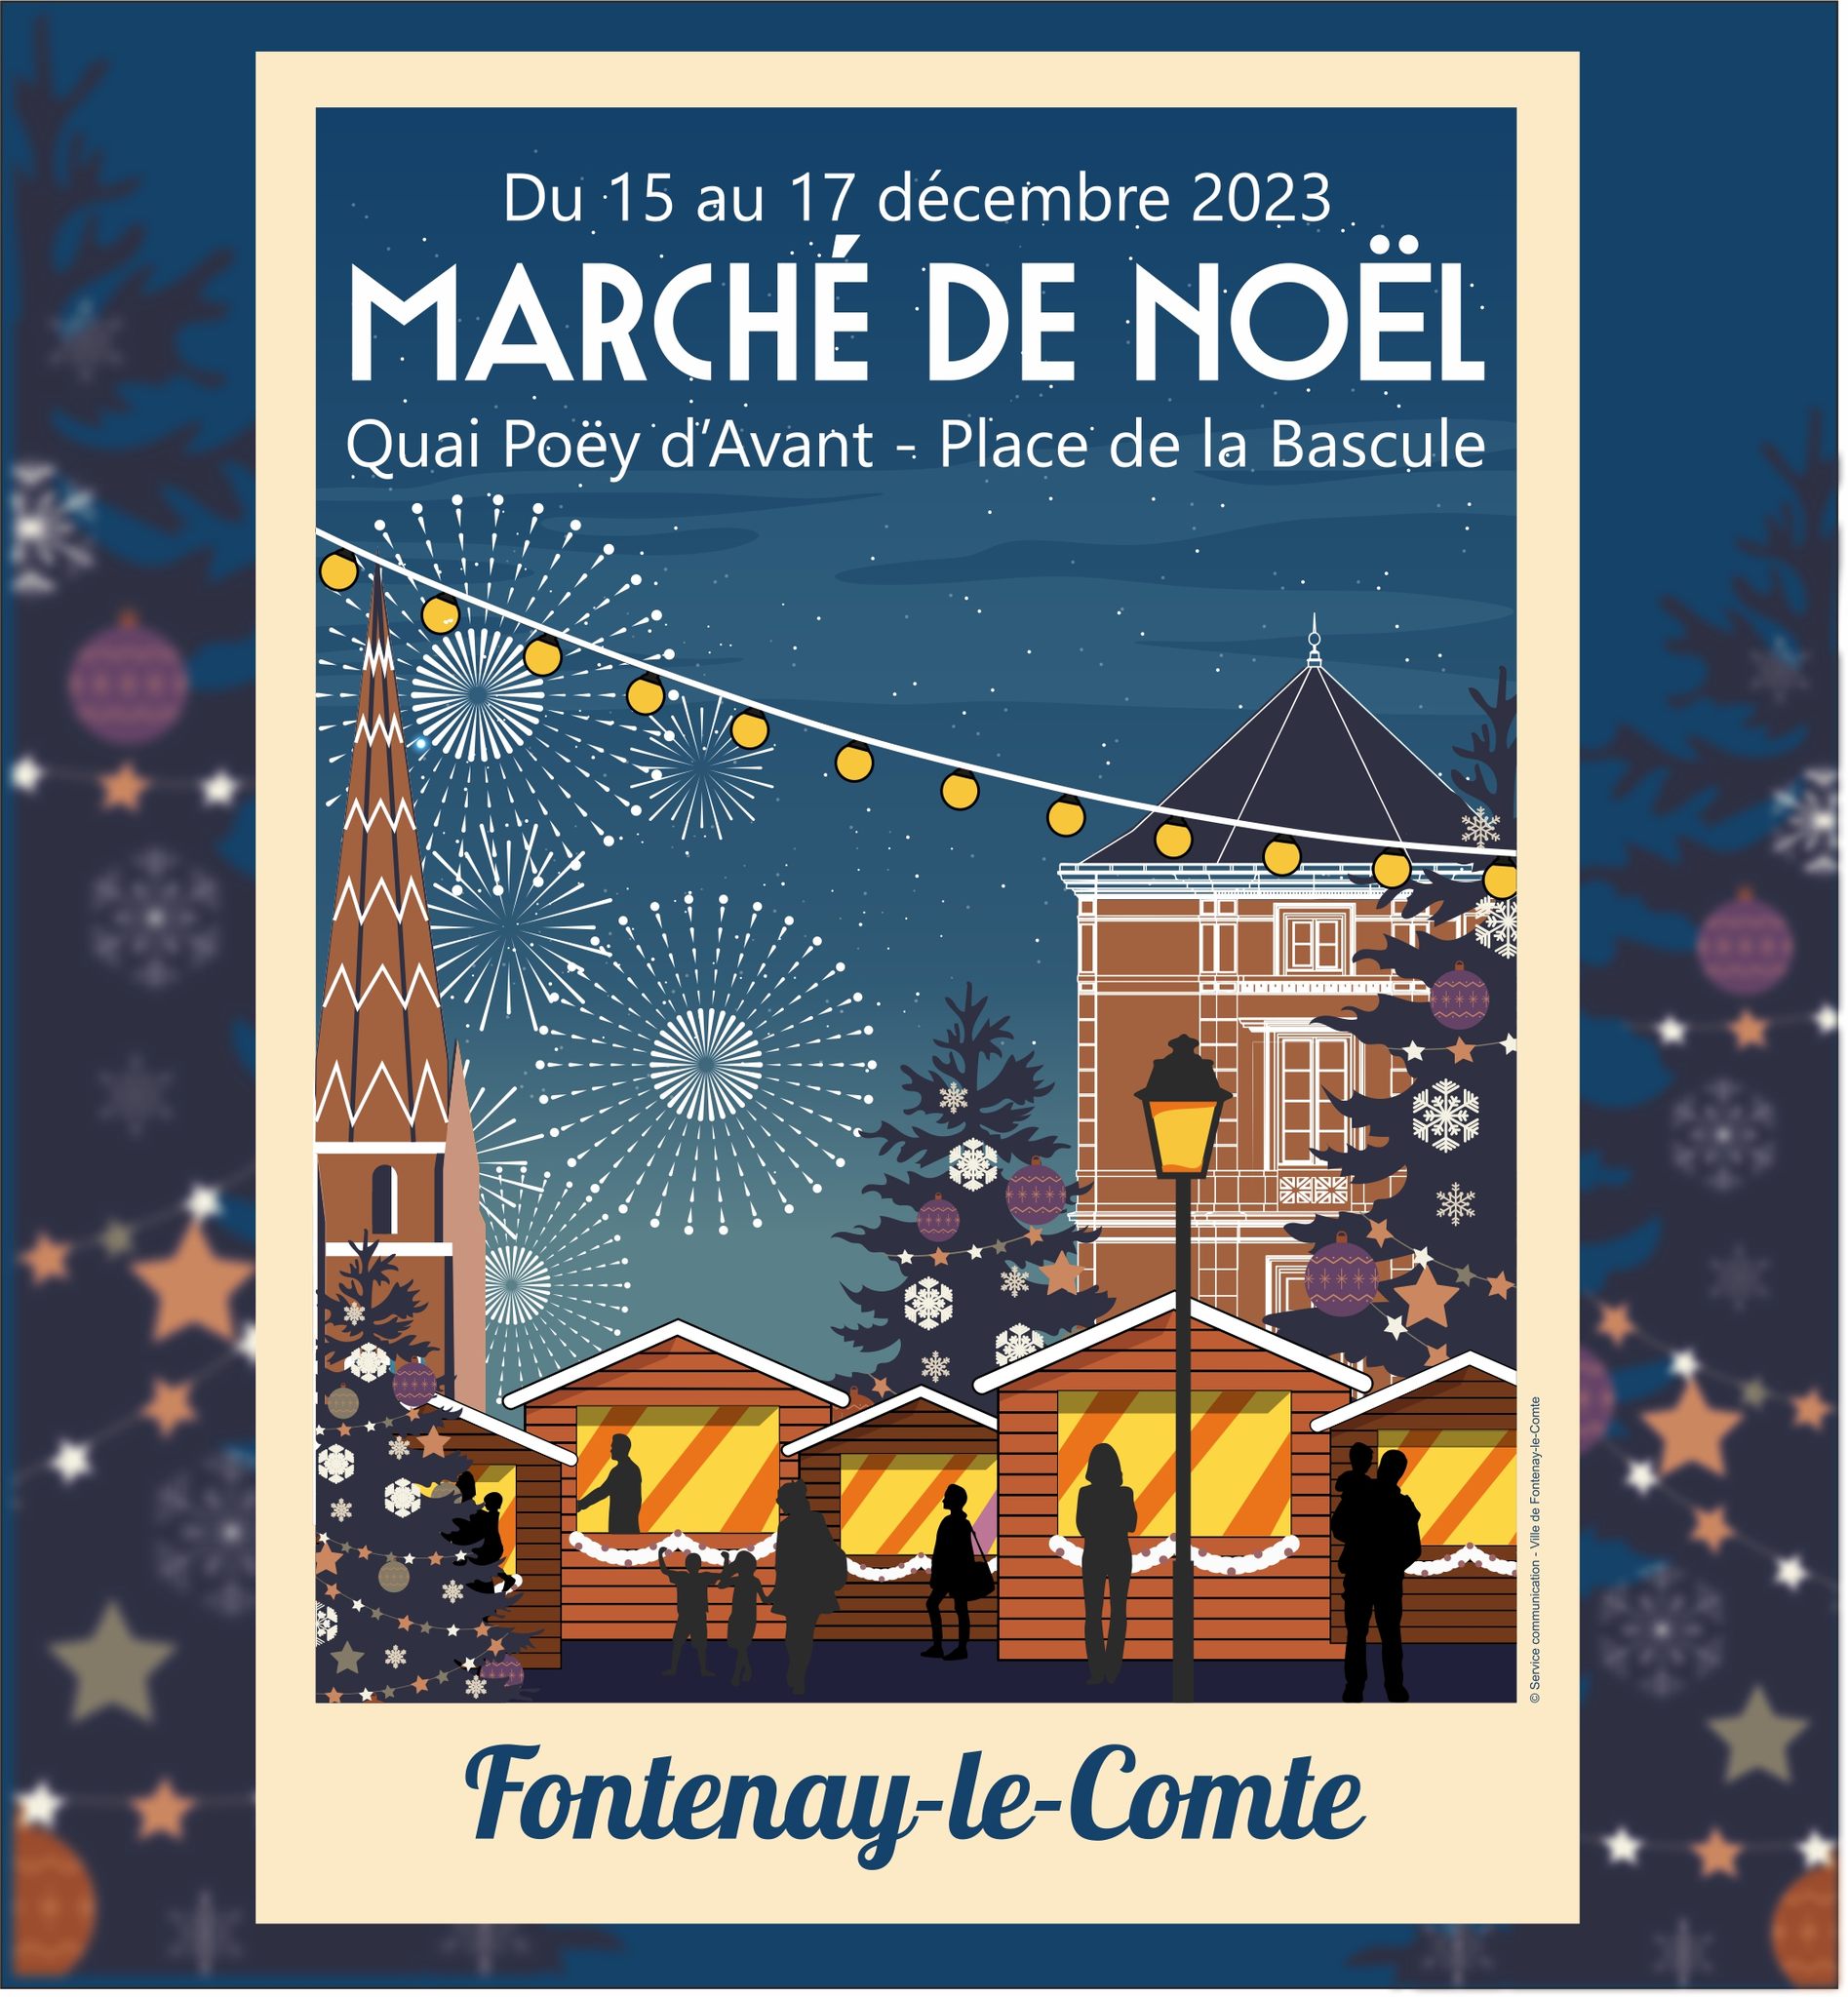 Le marché de Noêl de Fontenay-le-Comte